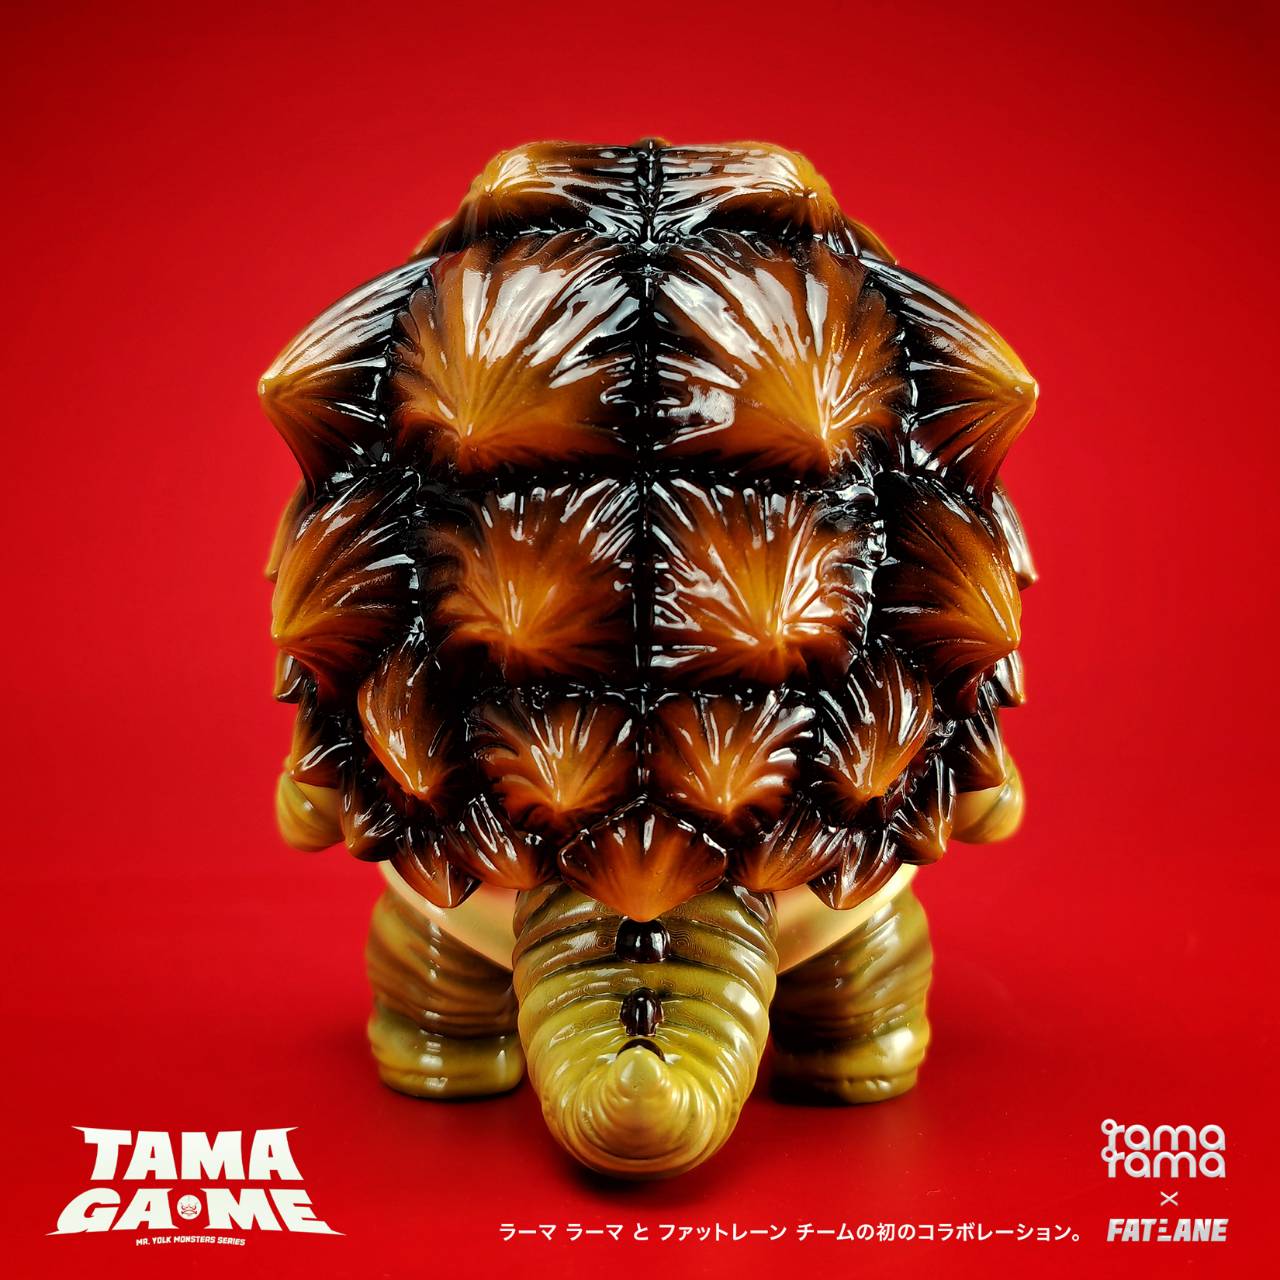 Tama Ga-Me by Ramarama studio x Fat Lane17 - Preorder